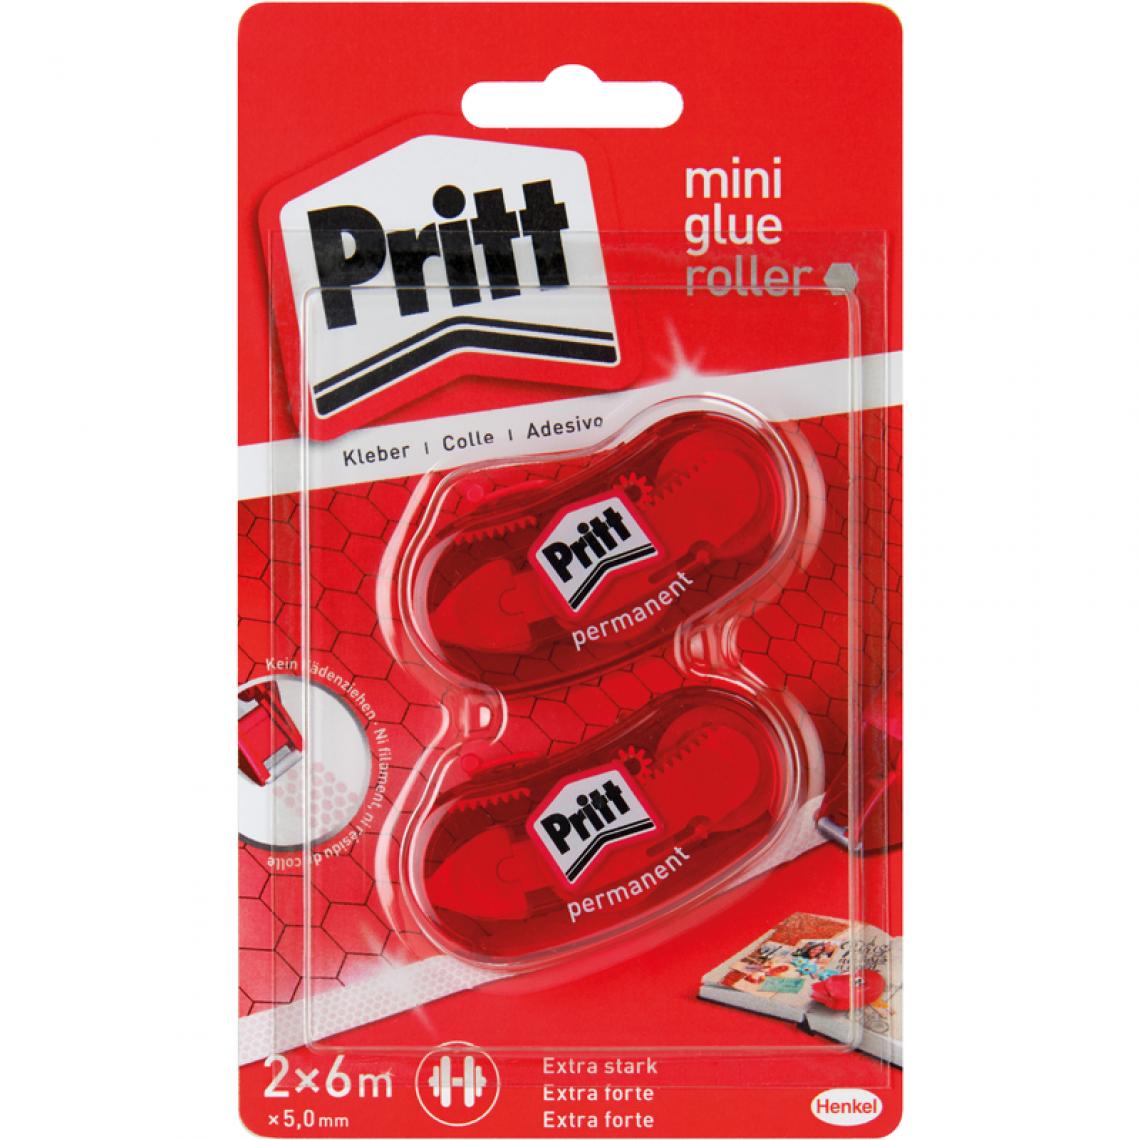 Pritt - Pritt Mini roller de colle, permanent, 5,0 mm x 6 m, () - Colles et pistolets à colle